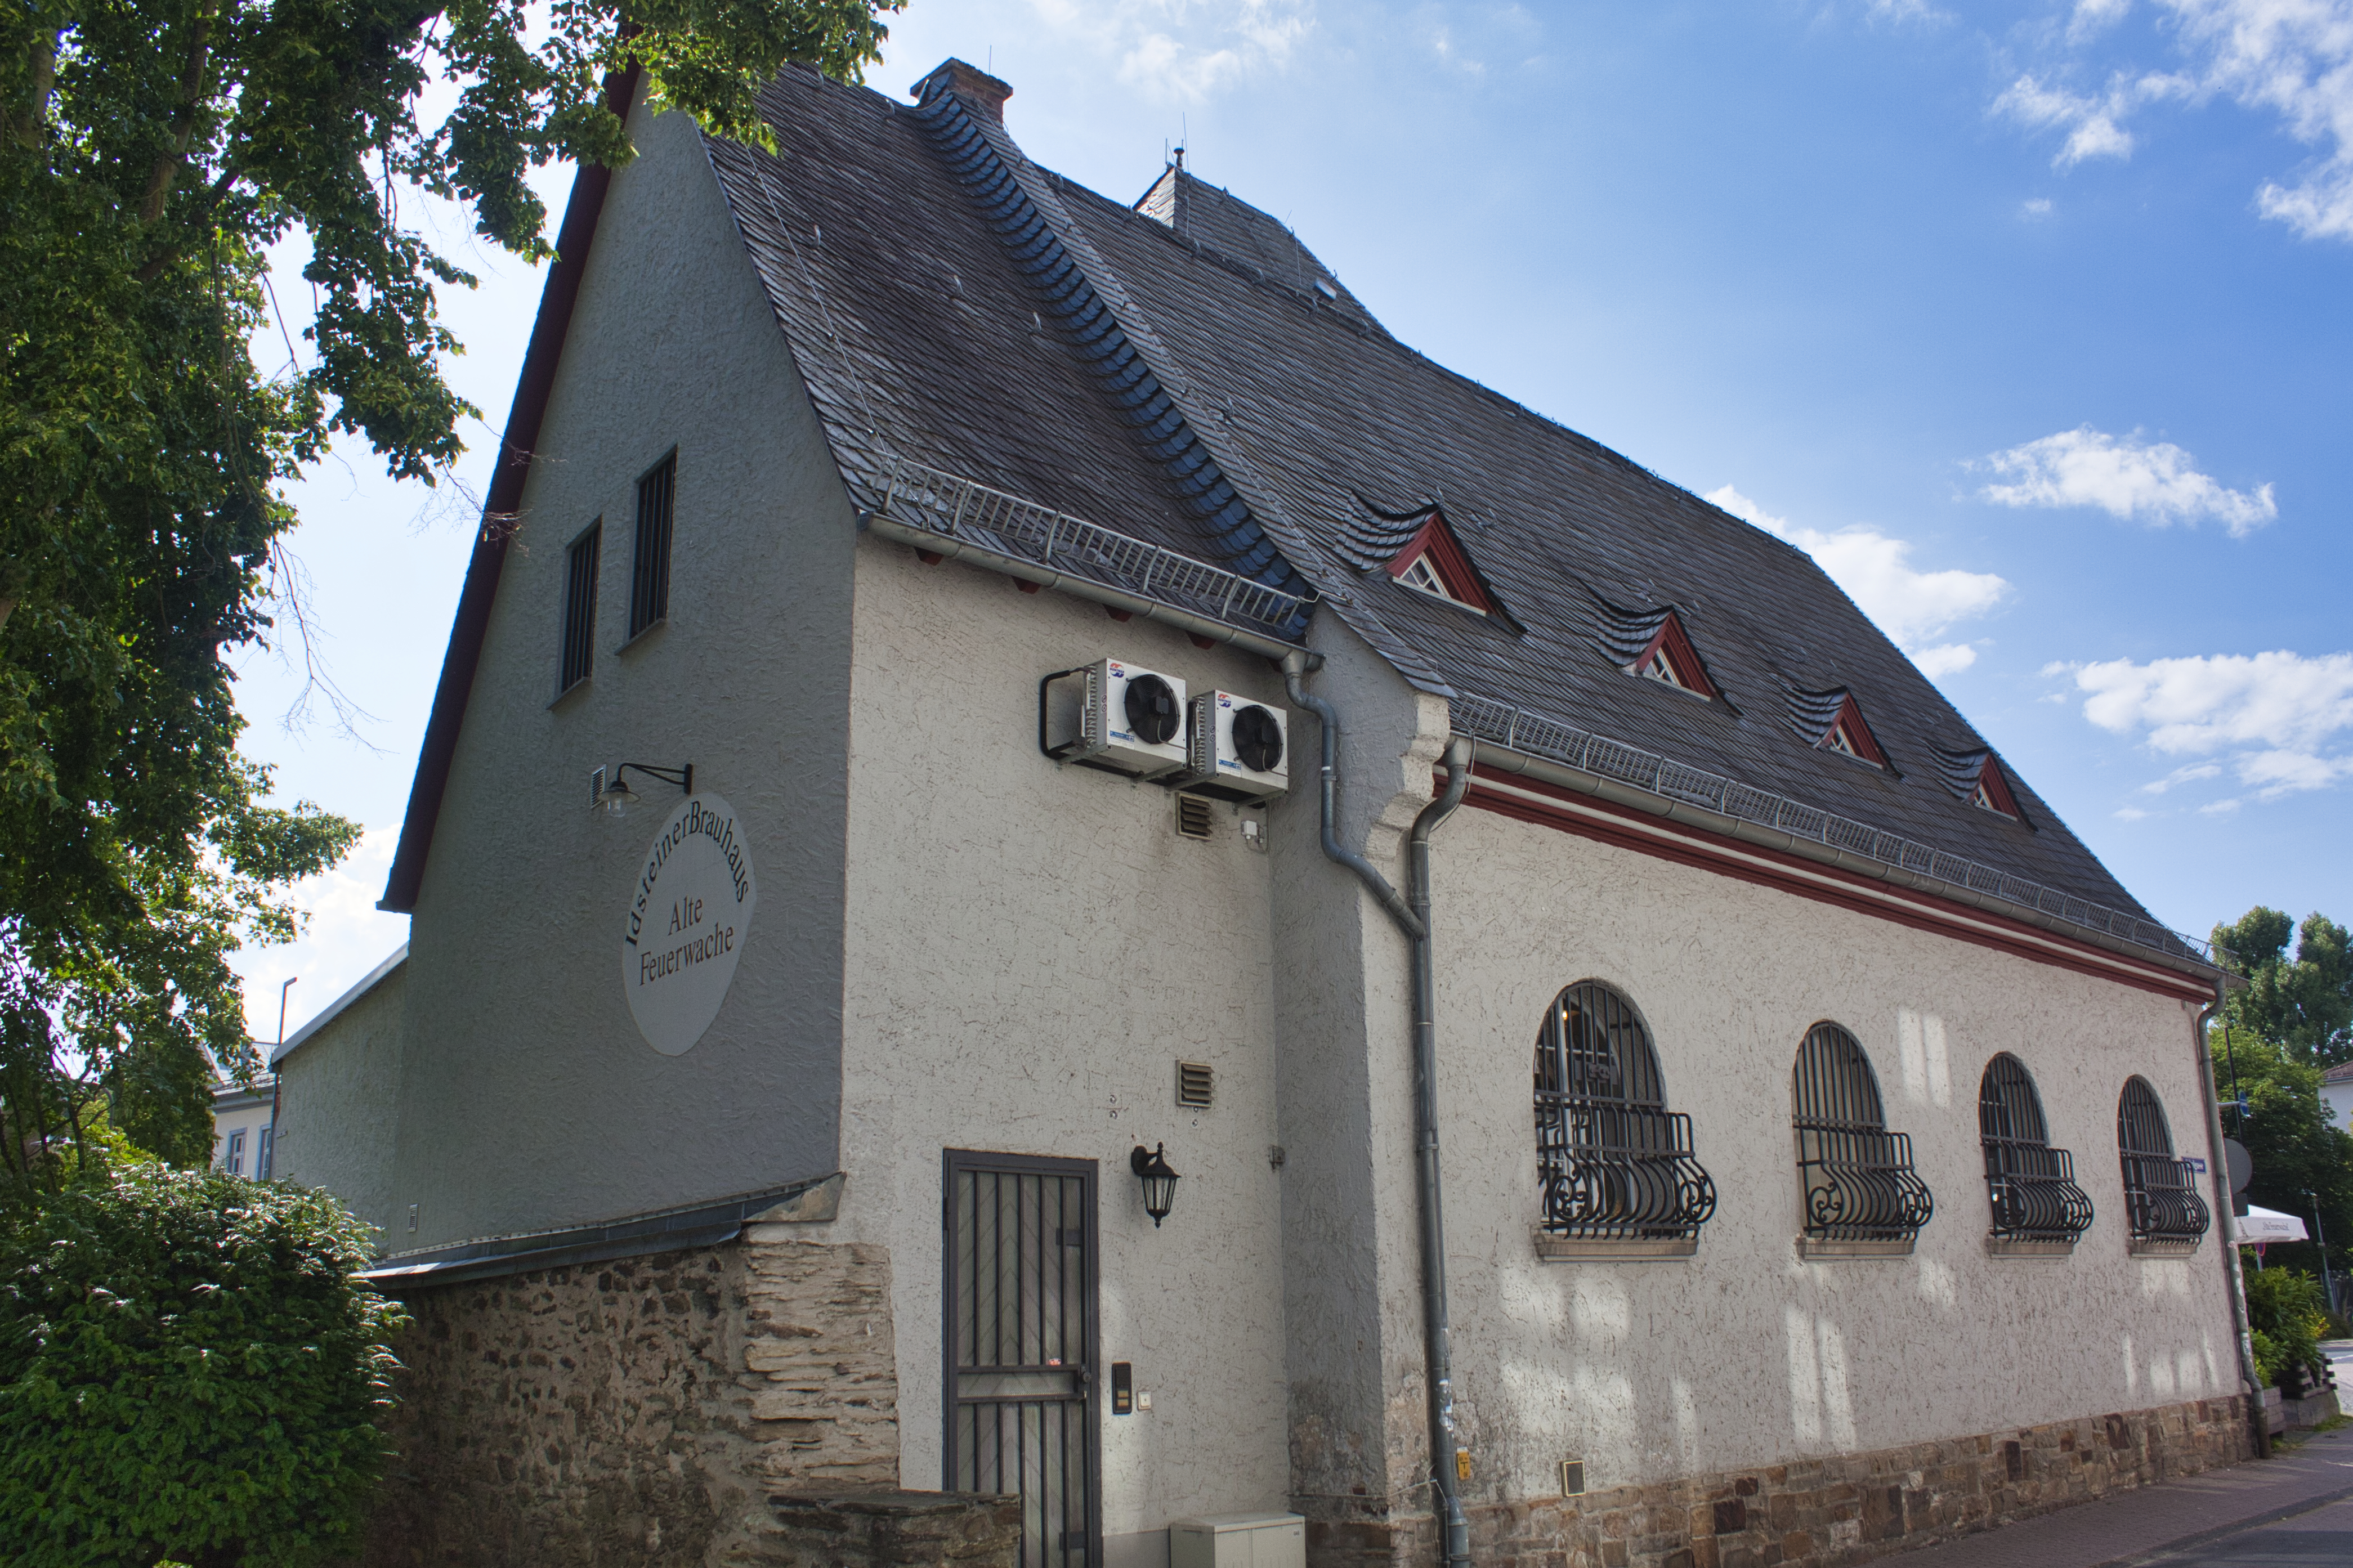 Die alte Feuerwache, heute ein Brauhaus in Idstein.
